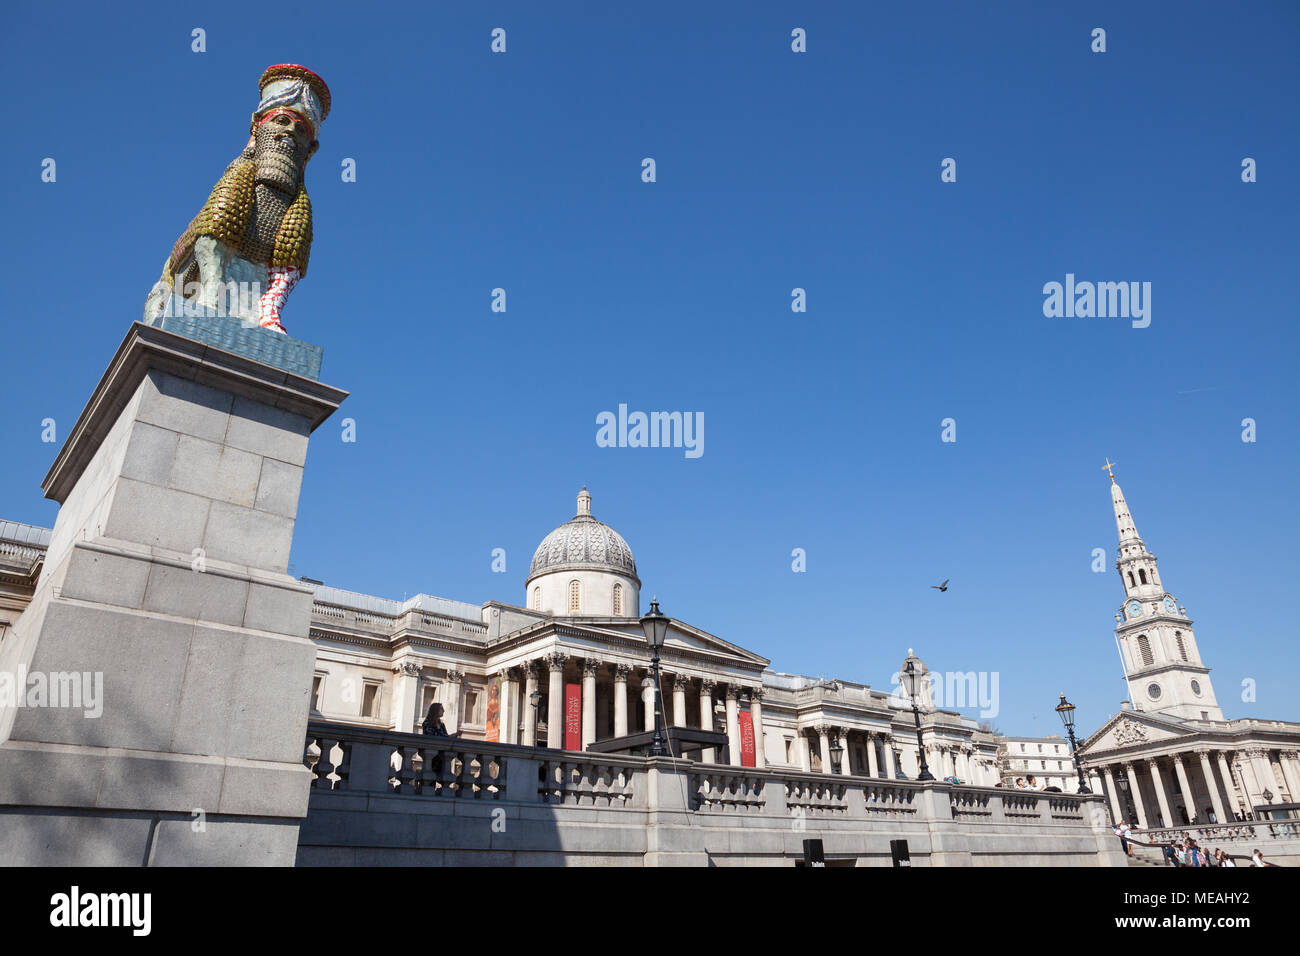 Der unsichtbare Feind sollte nicht existieren, von Michael Rakowitz, ist eine Skulptur von lamassu von leer Datum Dosen, die auf den vierten Sockel, Trafalgar Square Stockfoto